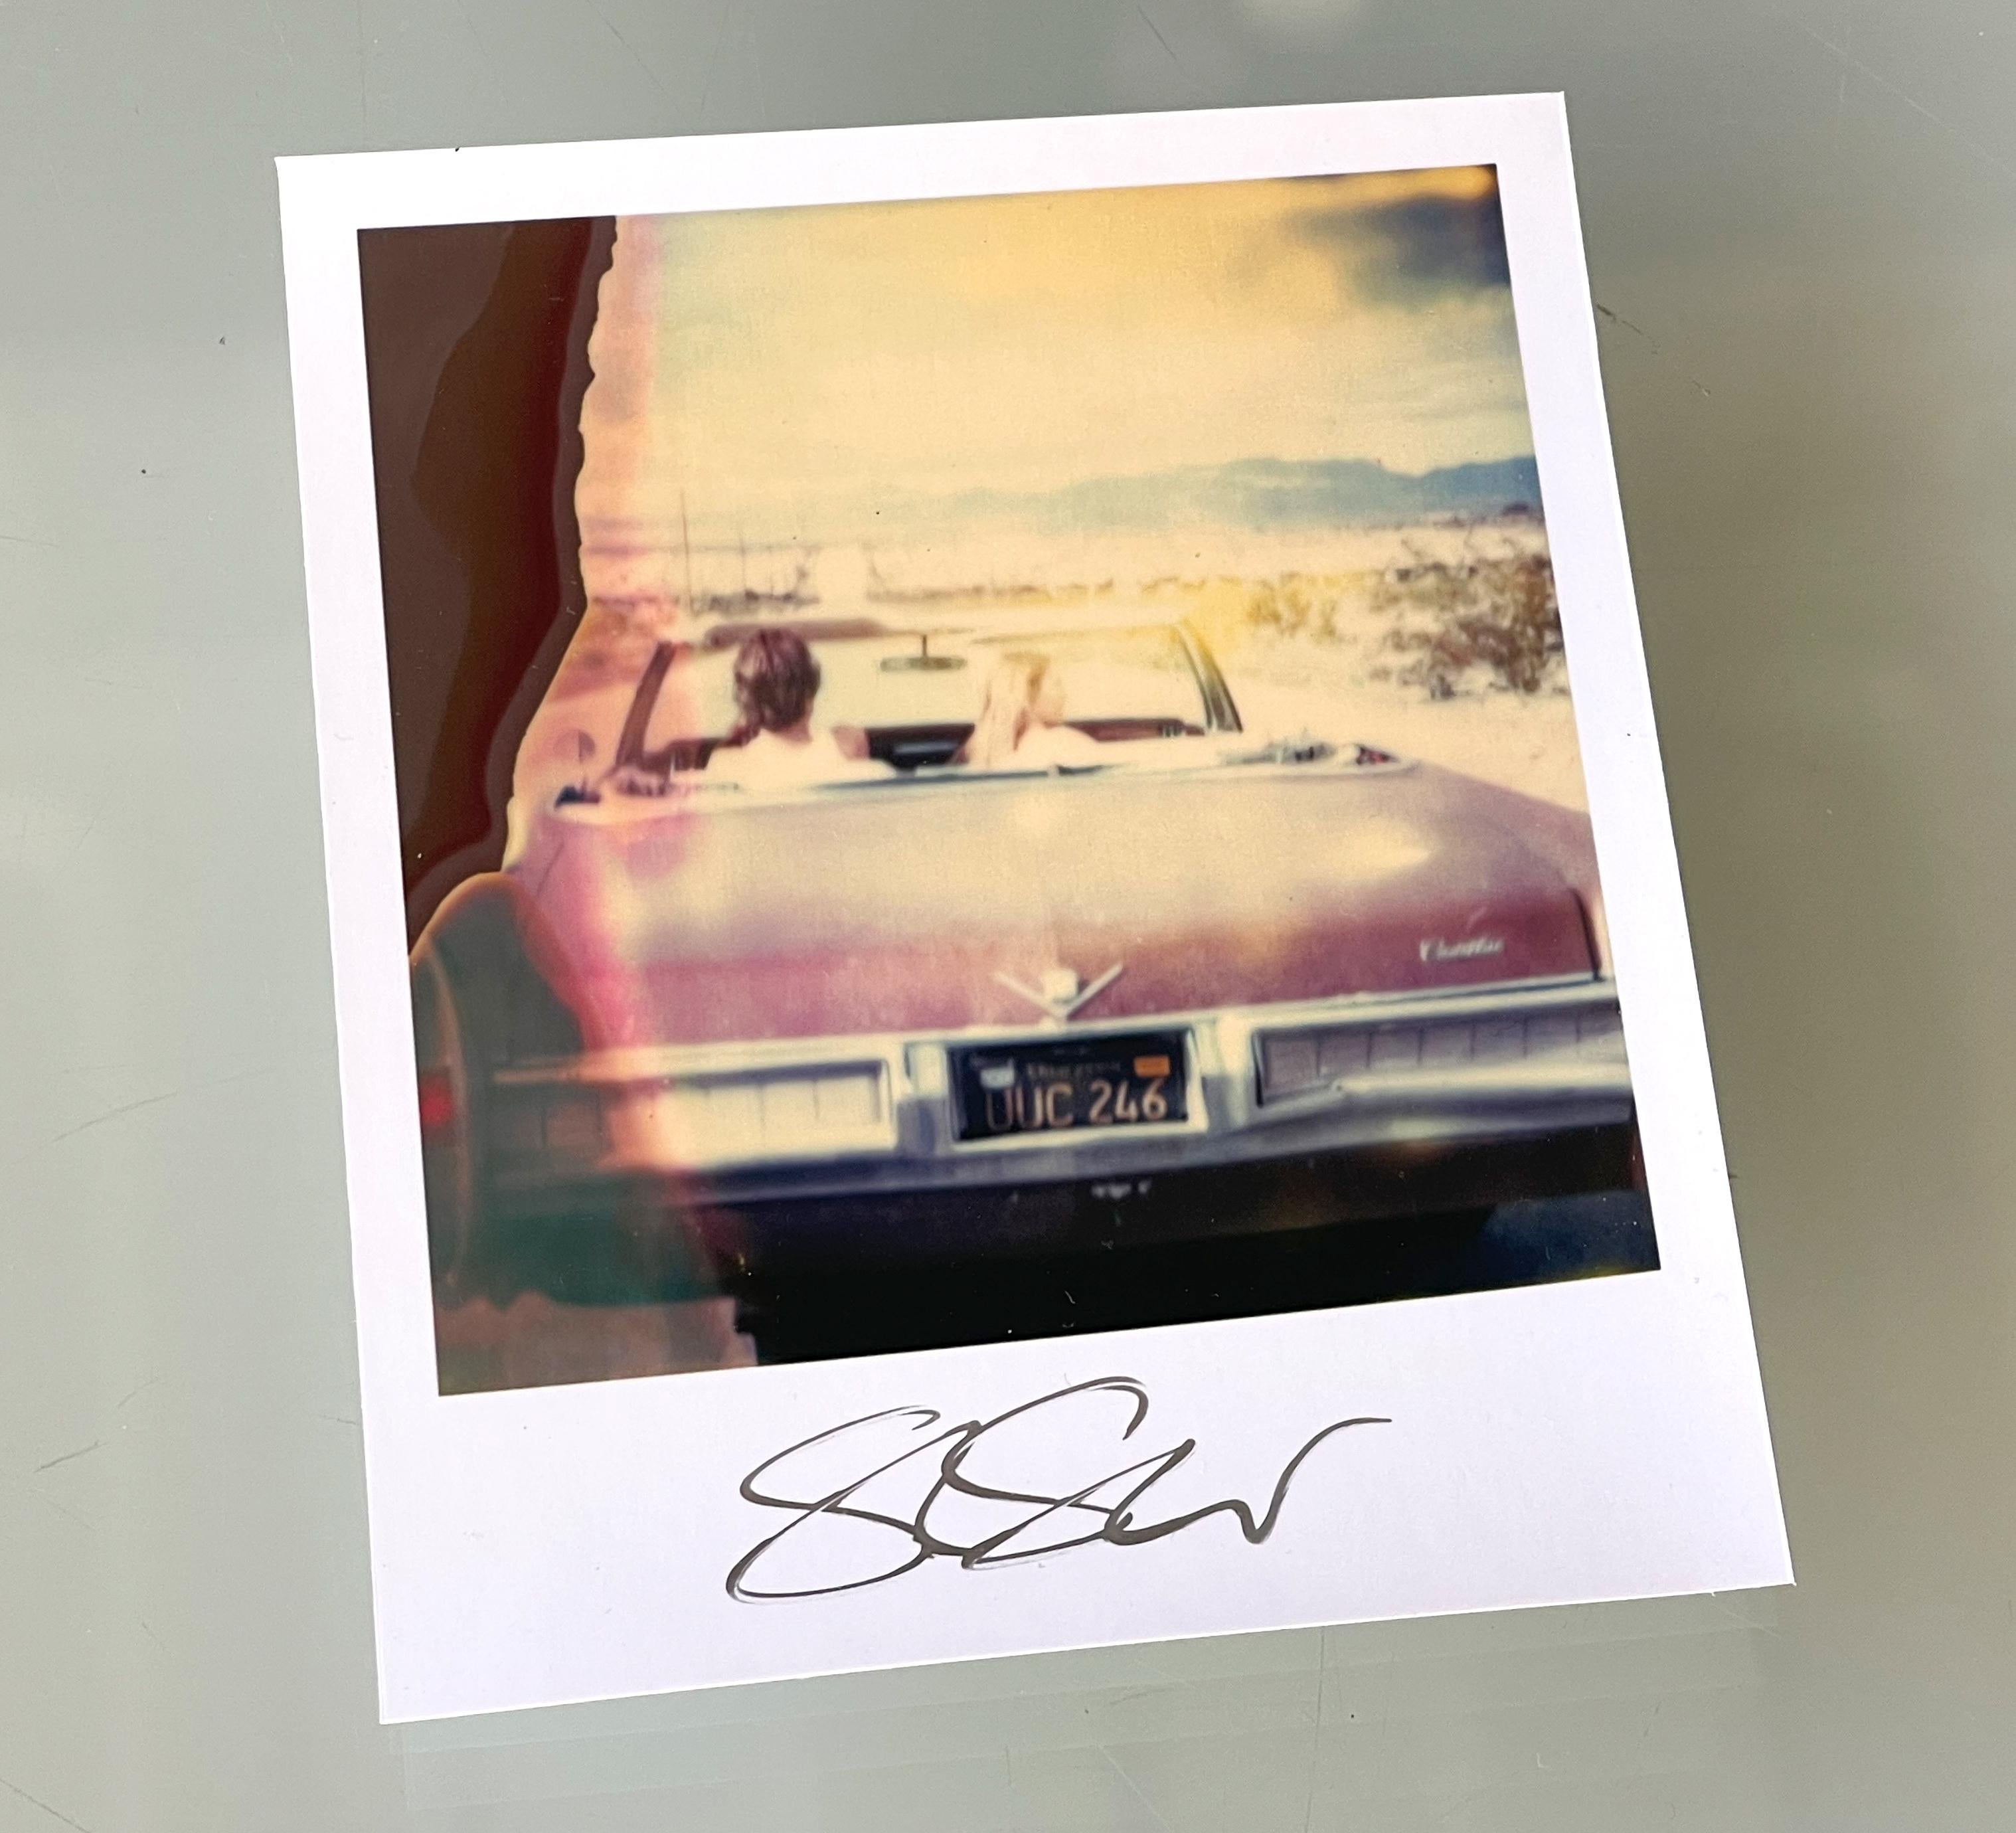 Stefanie Schneider Unbegrenzter Mini im Polaroidformat "The End" (Sidewinder) - 2005 - 

vorne signiert, nicht montiert. 
1 Archiv-Farbfotografie auf Basis des Polaroid. 

Offene Editionen in Polaroidgröße 1999-2022
10,7 x 8,8 cm (Bild 7,9 x 7,7